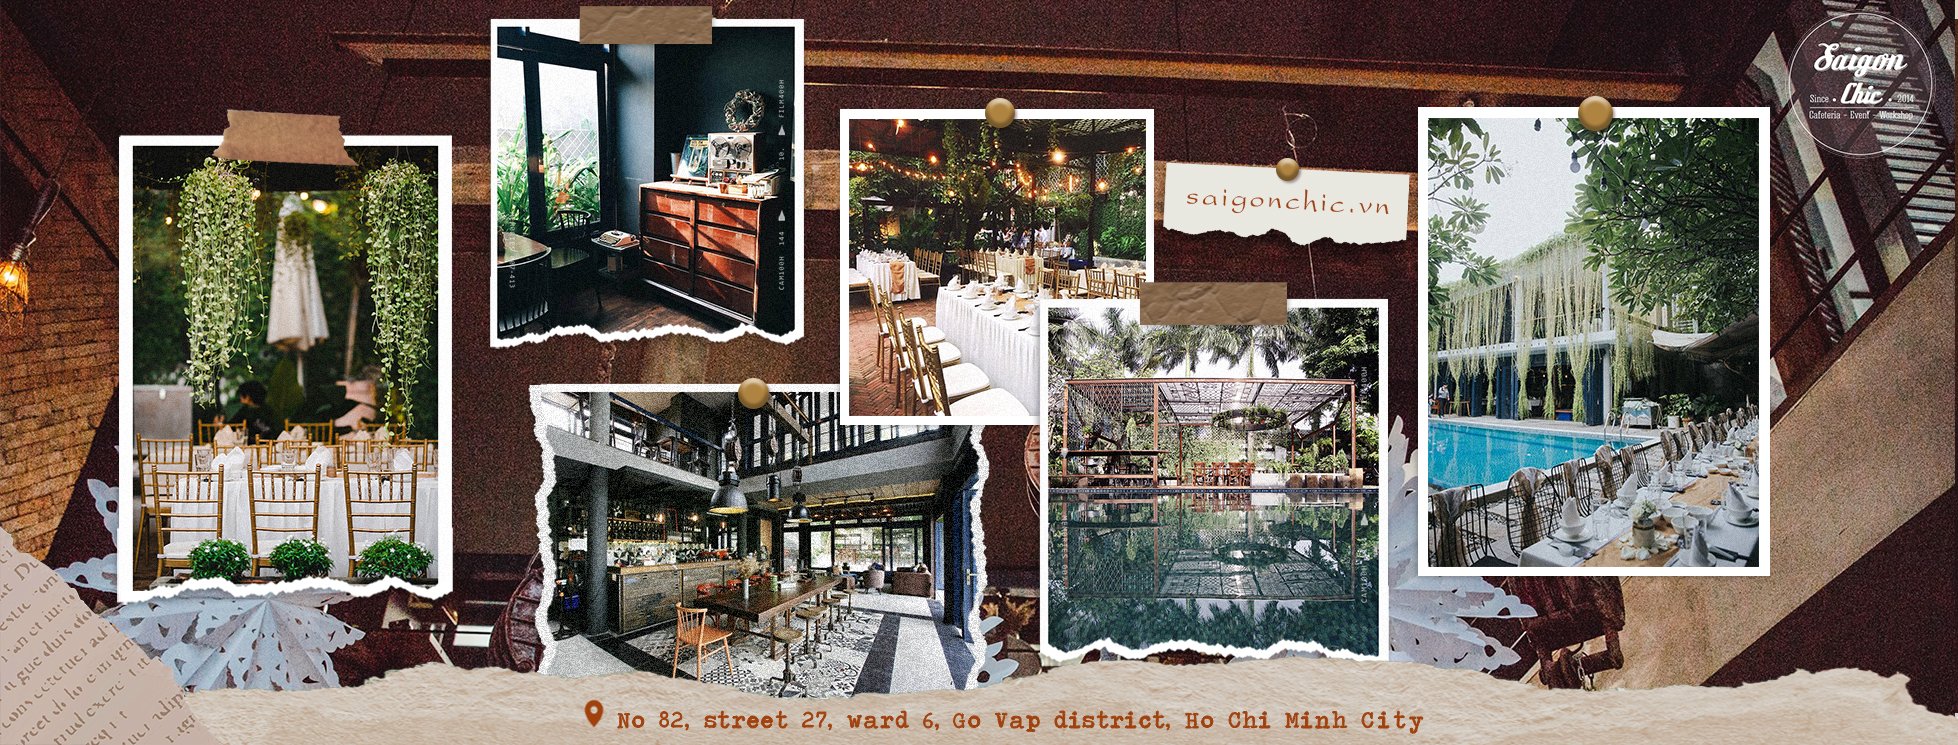 Saigon Chic là một quán cafe thư giãn quận 4 mang đậm phong cách cổ điển; hòa cùng không gian yên tĩnh mà thoáng đãng